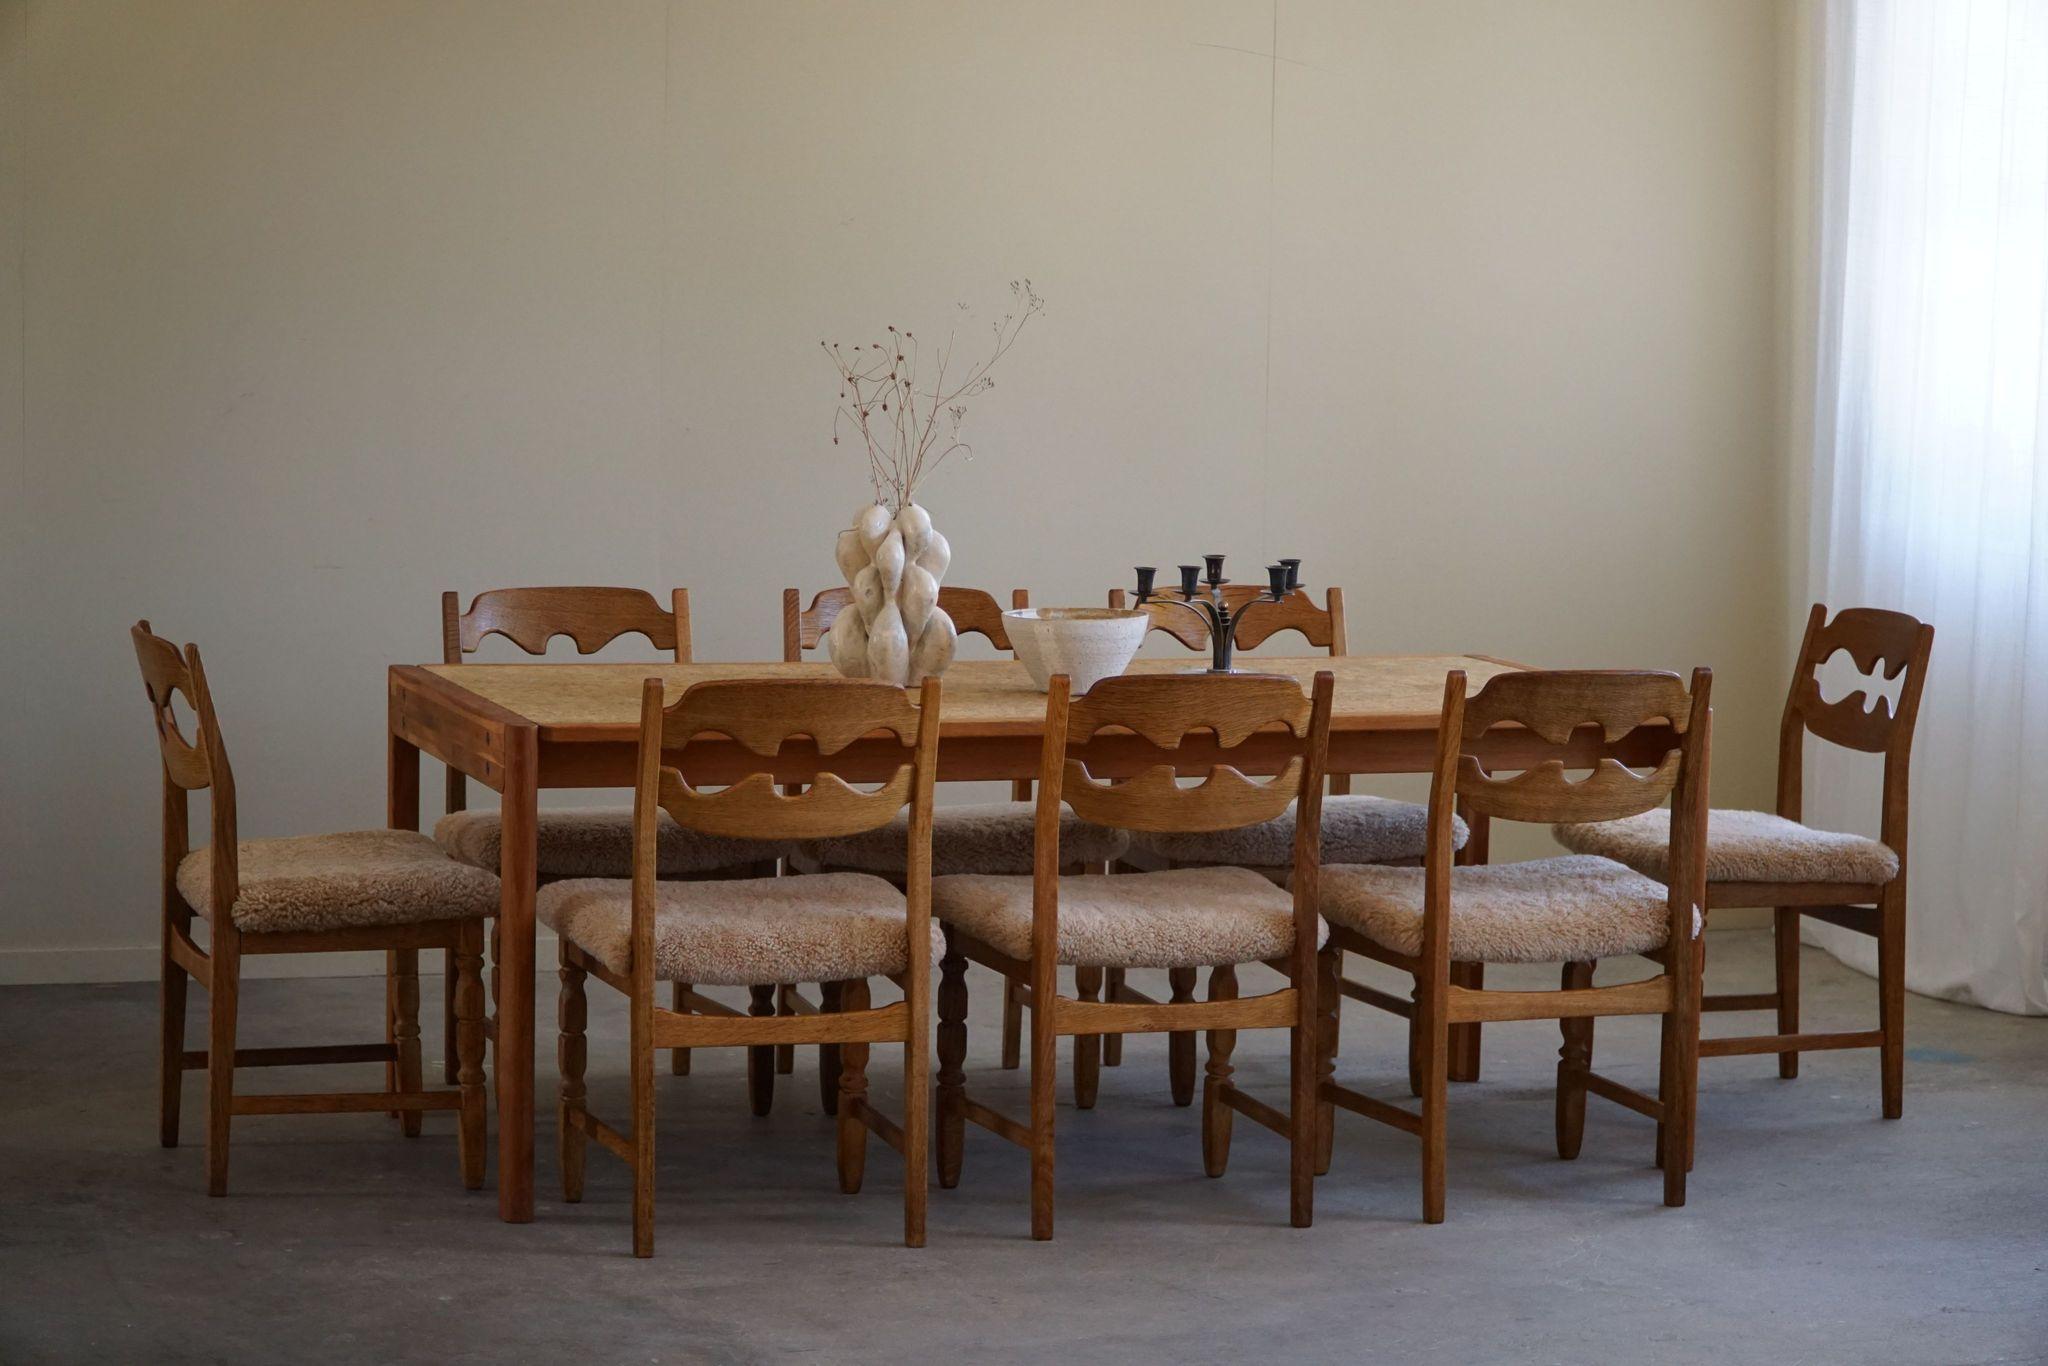 Jørgen Bækmark, Dining Table in Oak & Cork, Danish Mid Century Modern, 1960s For Sale 5